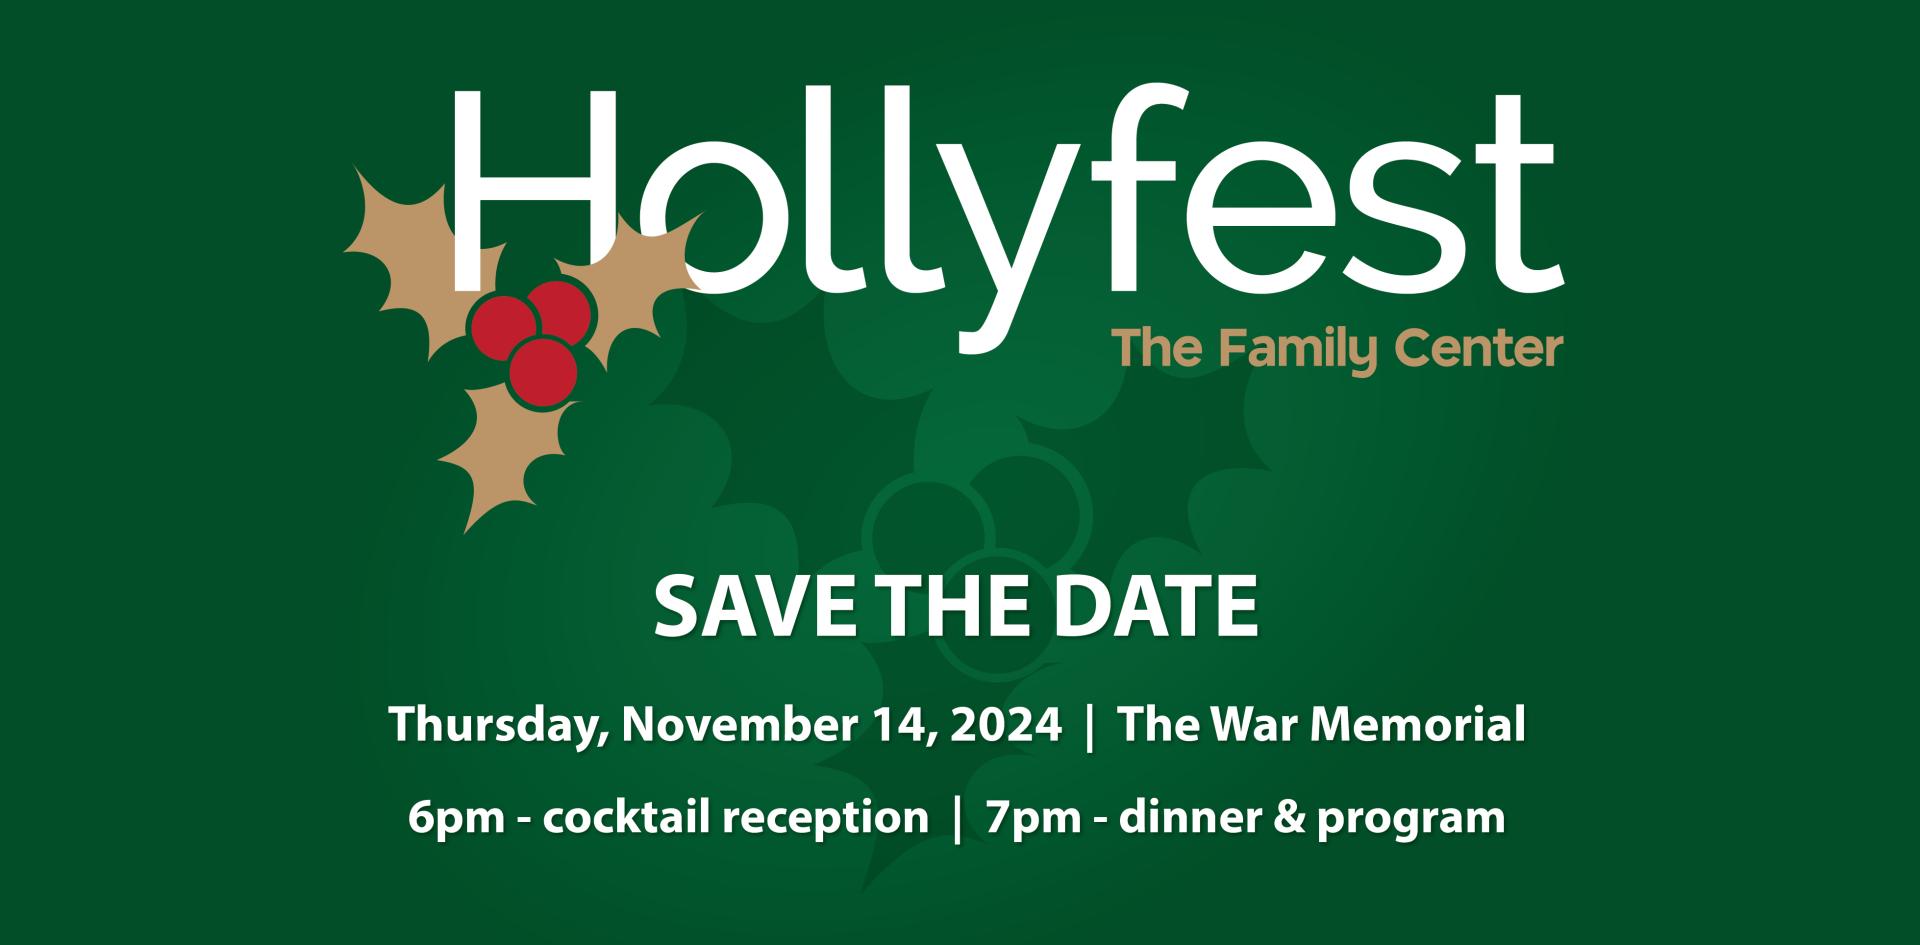 Hollyfest